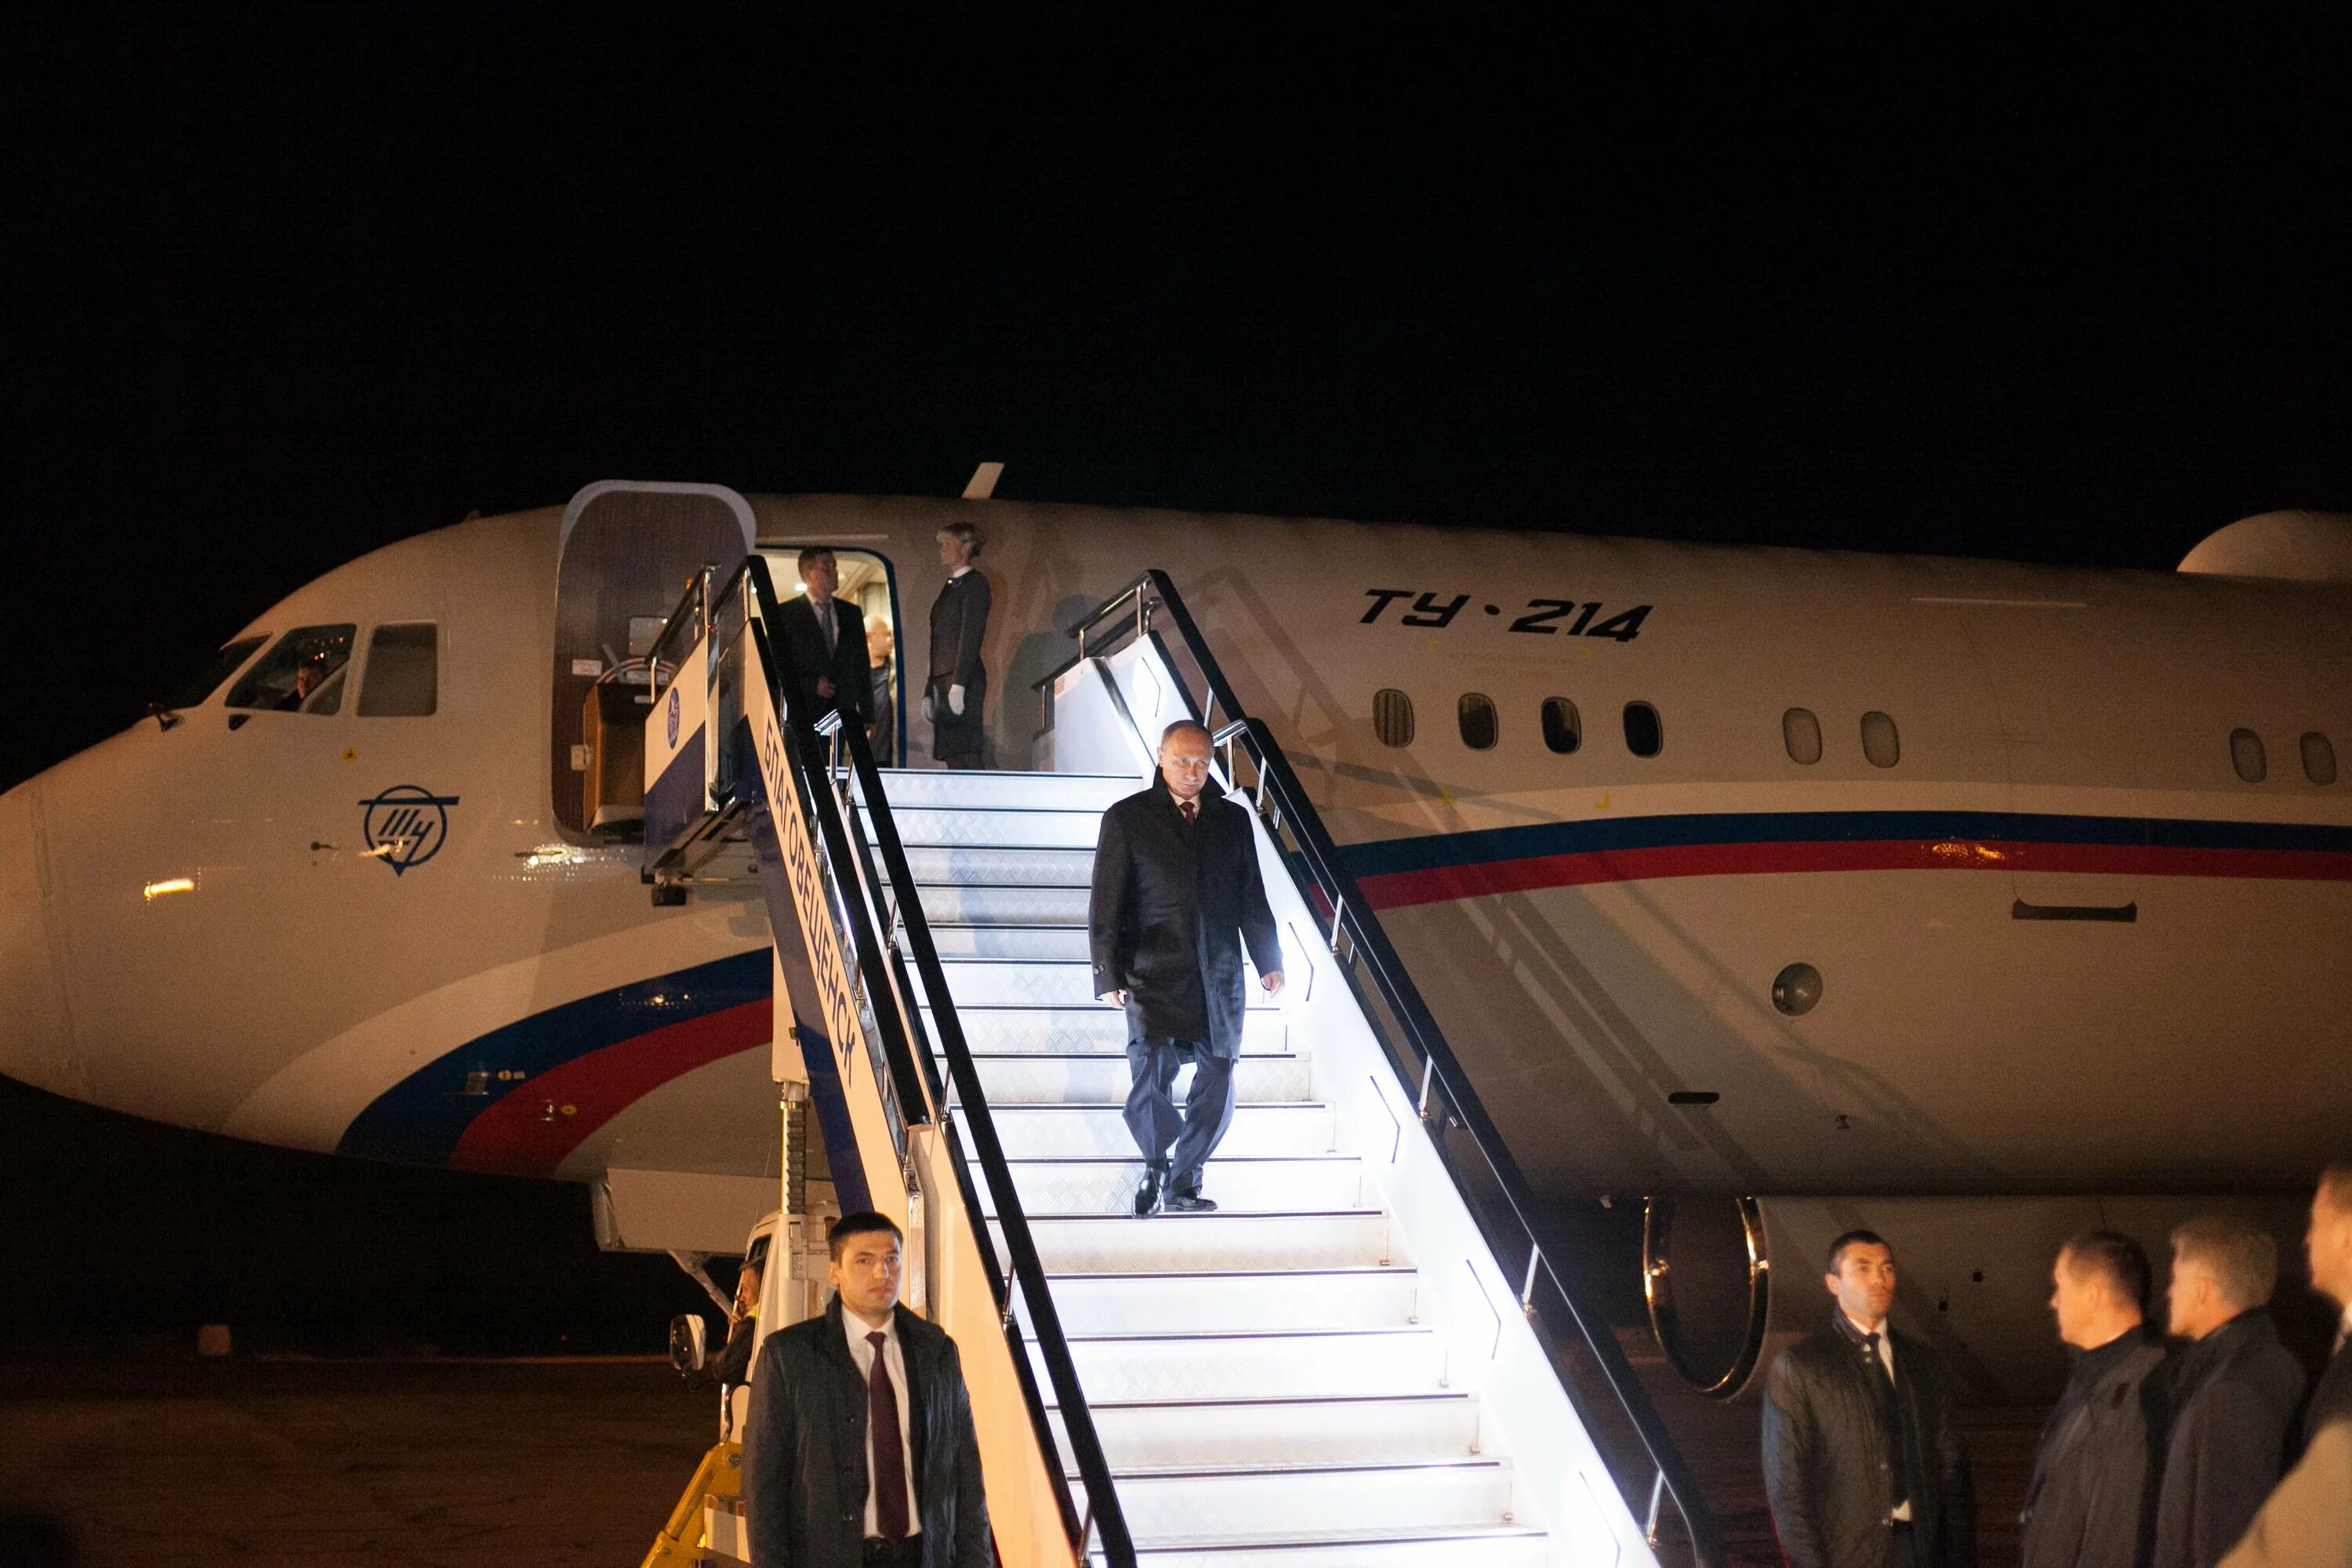 Борт 1 президента России. Самолёт президента Путина. Самолет борт номер 1. Самолёт президента борт номер 1.